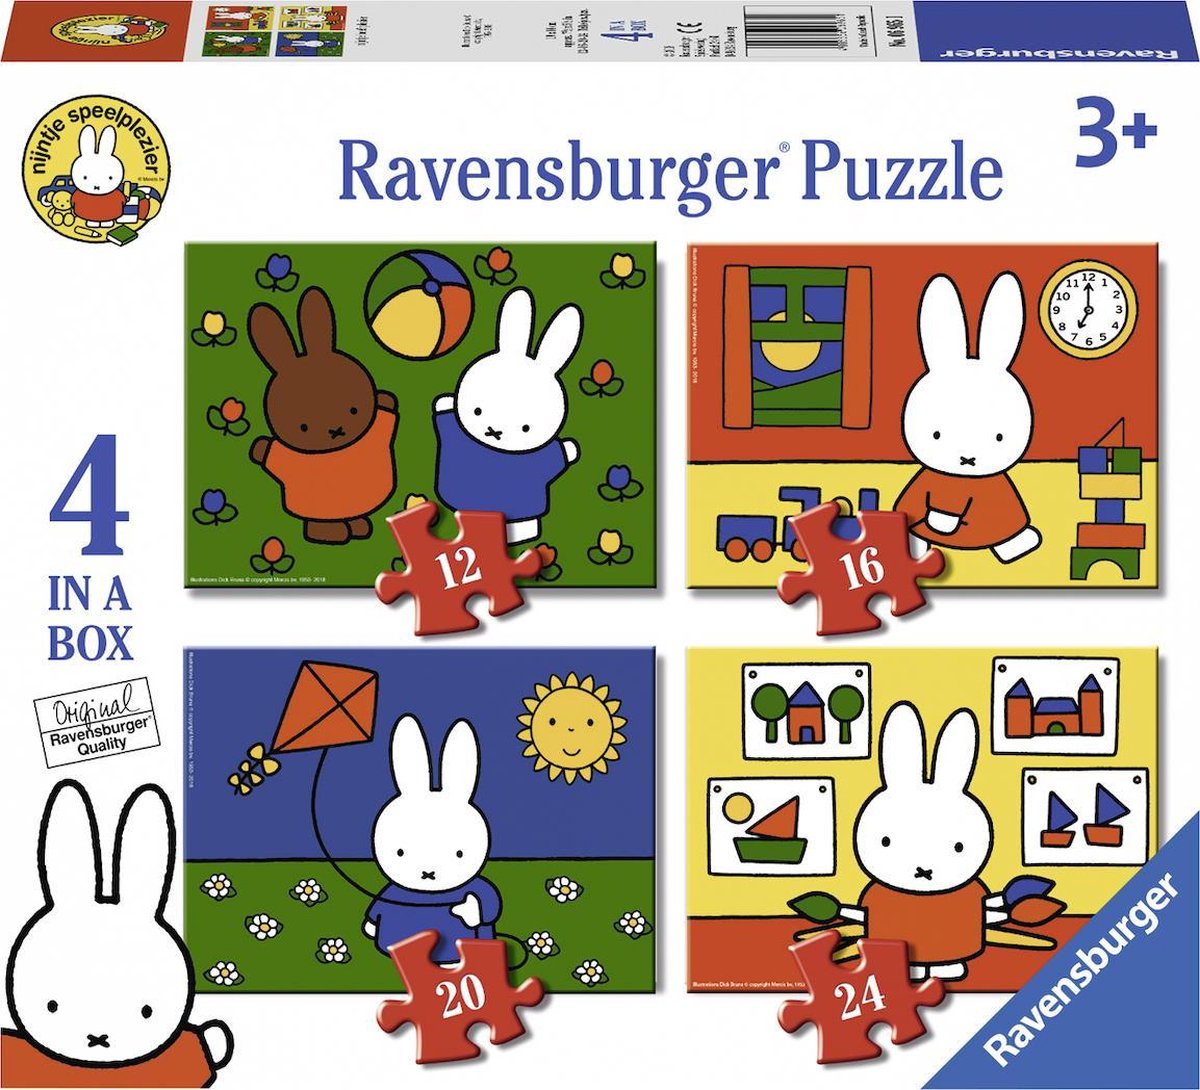 Ravensburger nijntje 4in1box puzzel - 12+16+20+24 stukjes - kinderpuzzel - Ravensburger